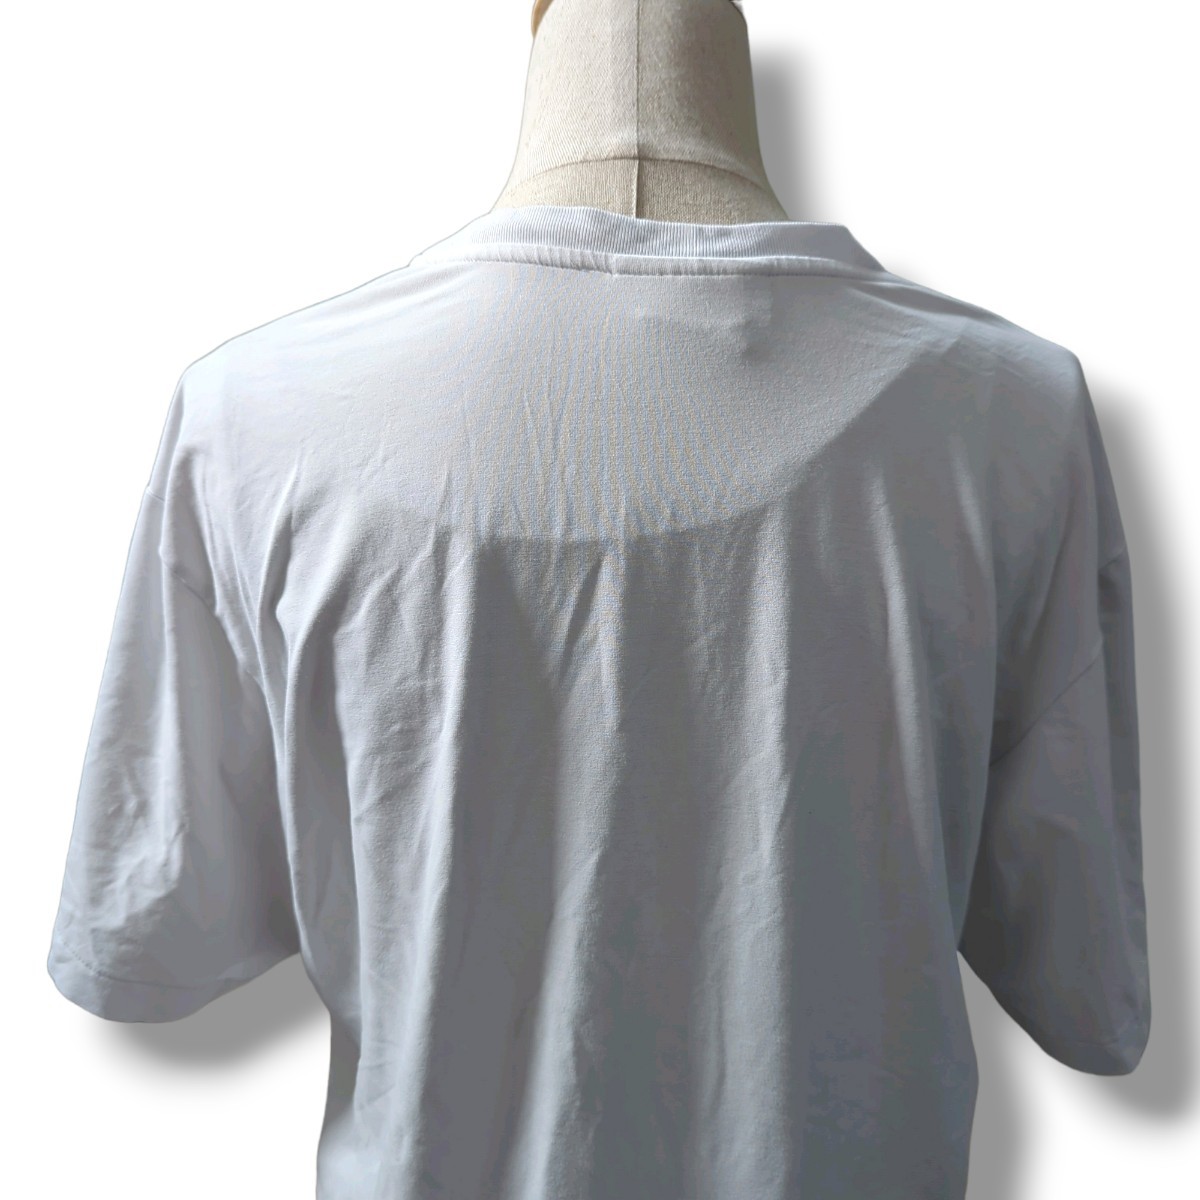 KEI-80 MXP ゴールドウィン トップス Tシャツ 半袖 白 ホワイト XLサイズ スポーツウェア 運動着 メンズ ジム ビッグティー シンプル_画像7